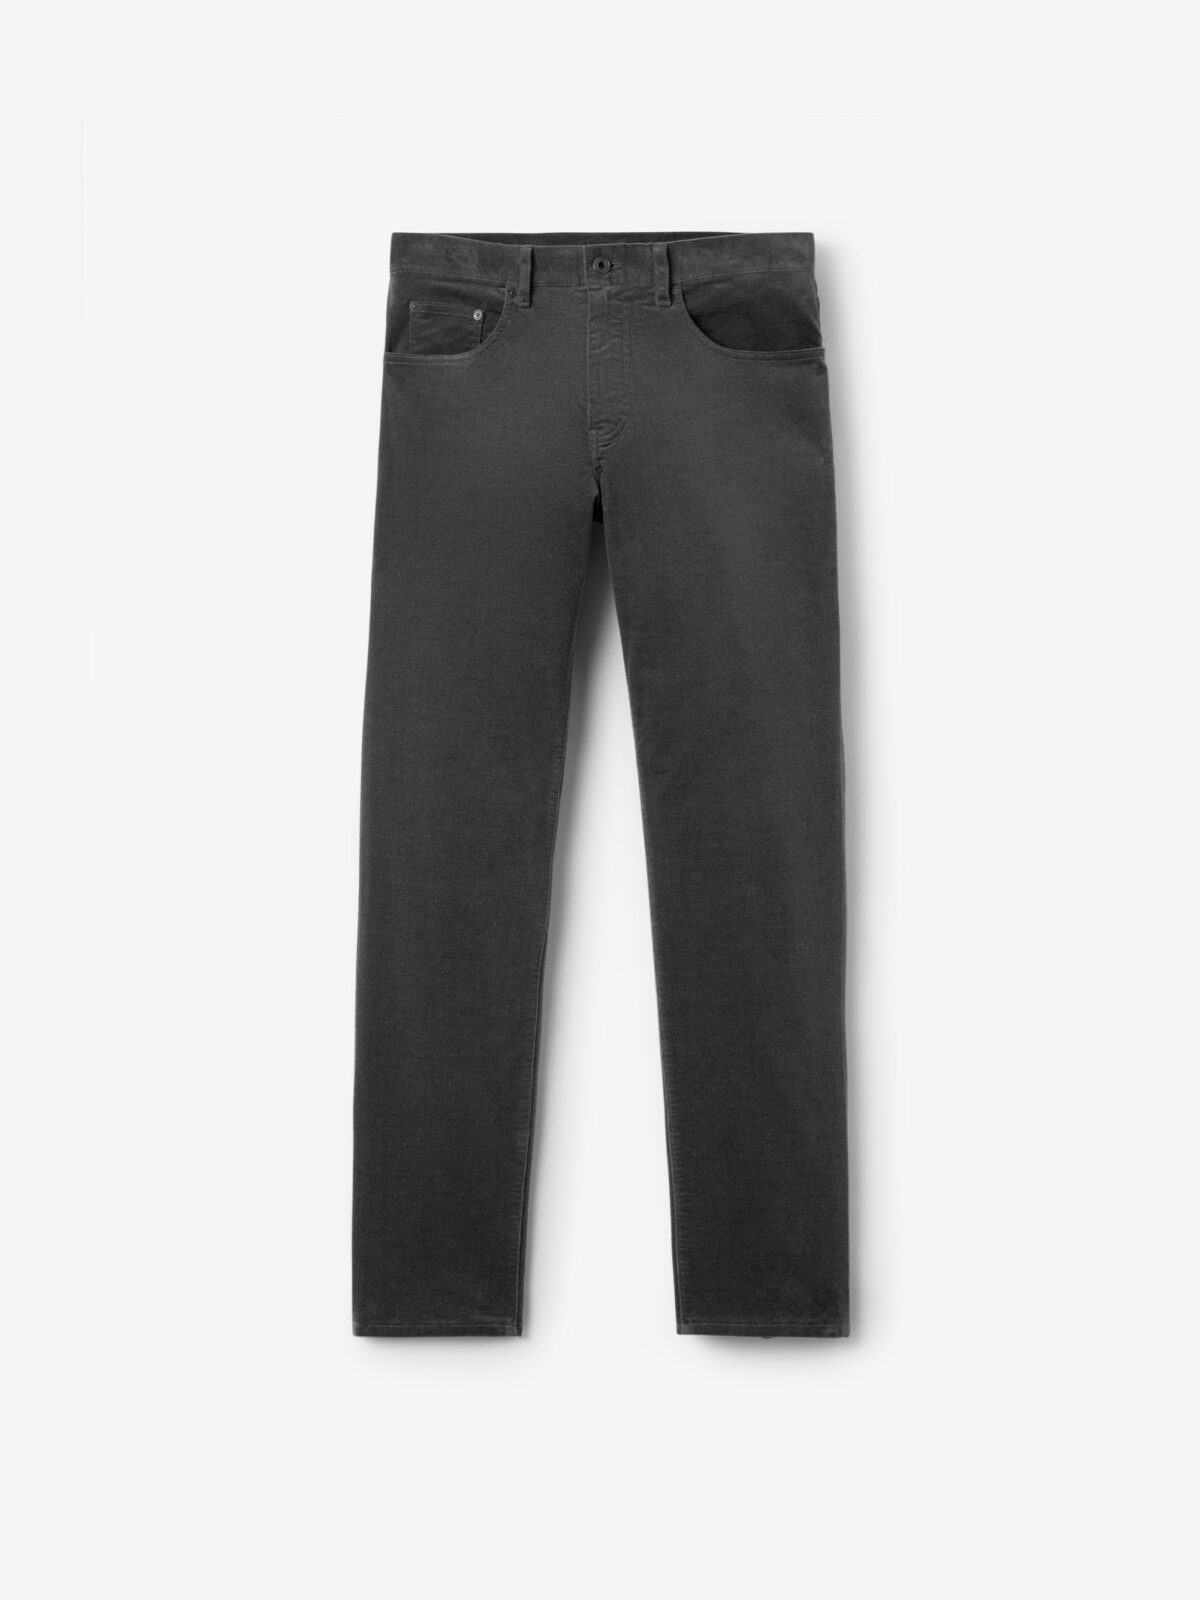 Biella Grey Stretch Textured Moleskin 5-Pocket - Custom Fit Pants